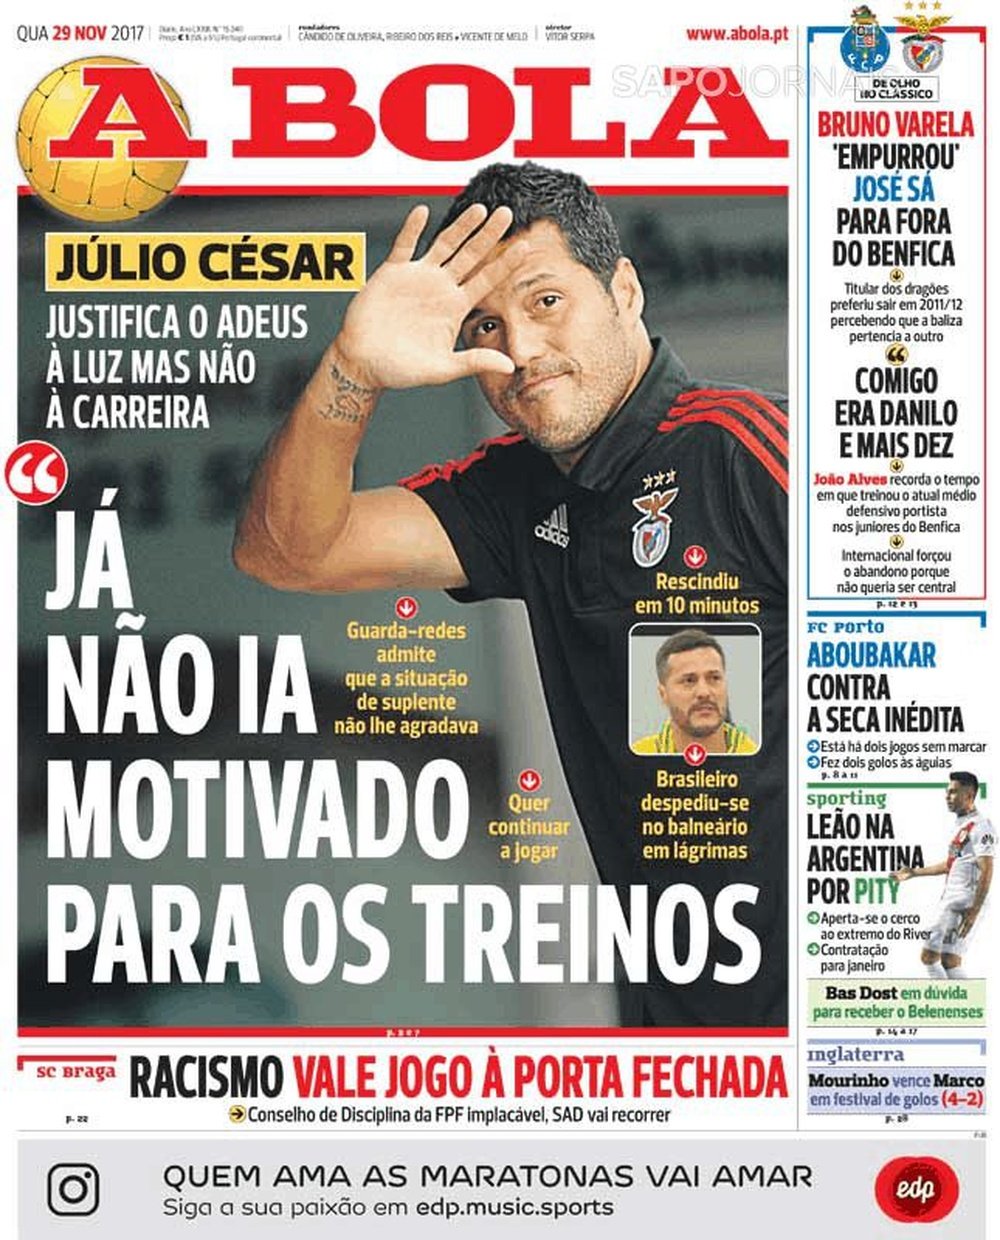 Capa do jornal A Bola, 29/11/2017. A Bola